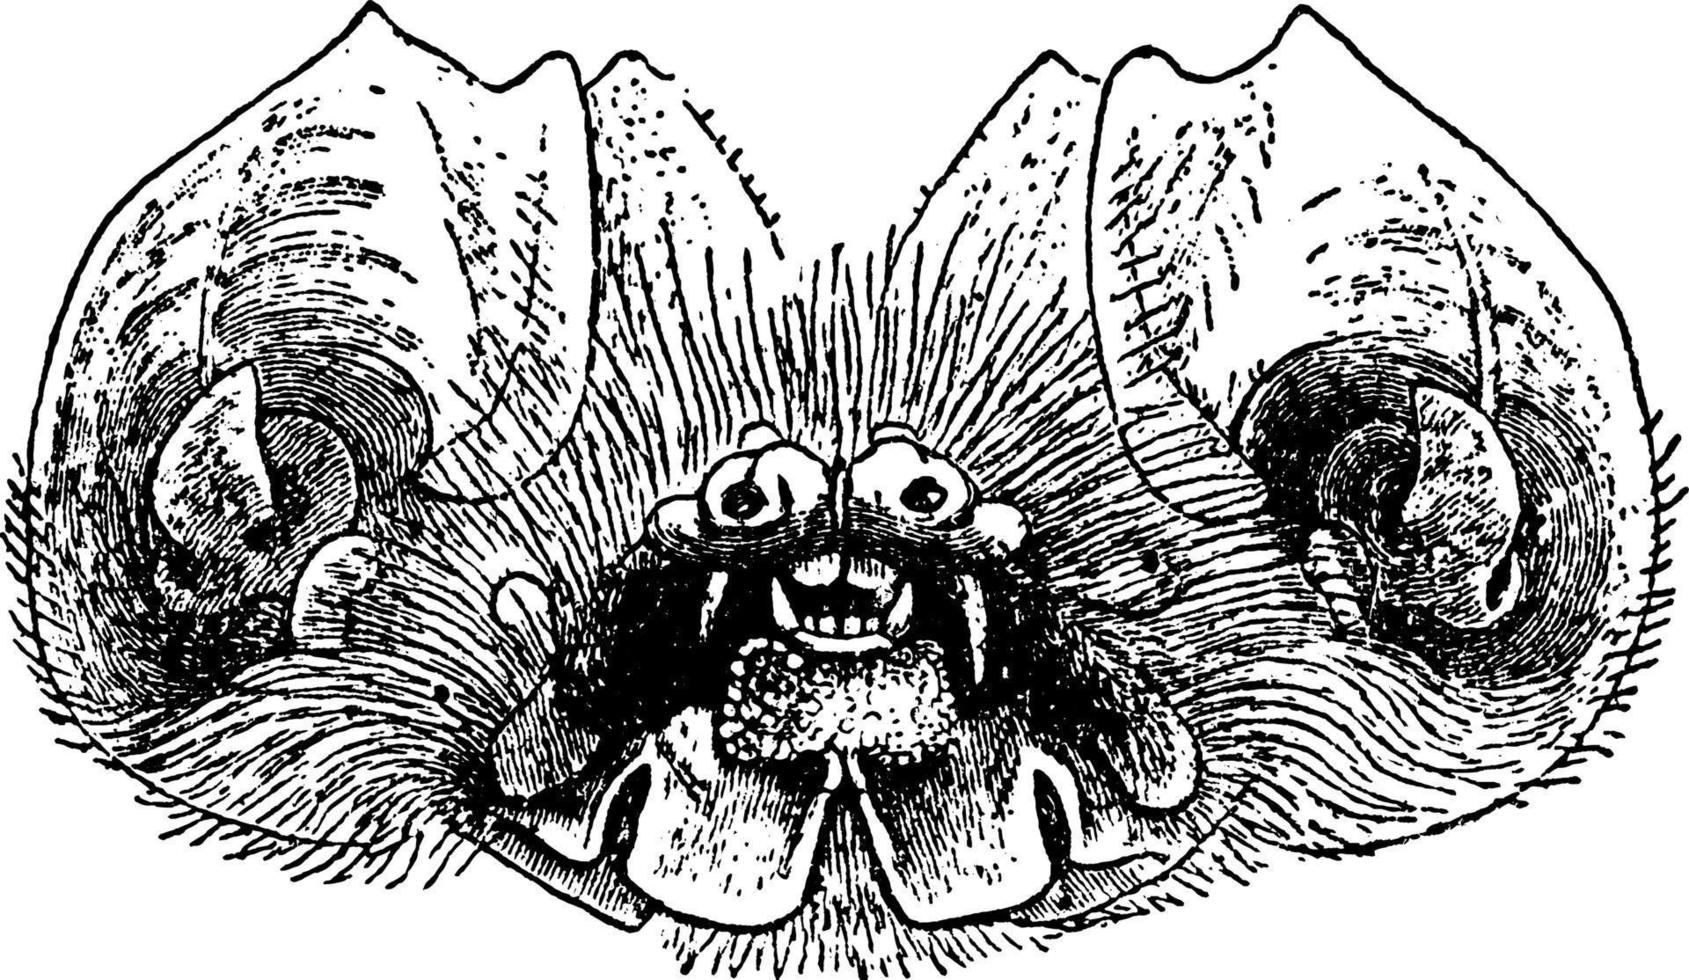 mormops blainrillii, ilustración vintage. vector